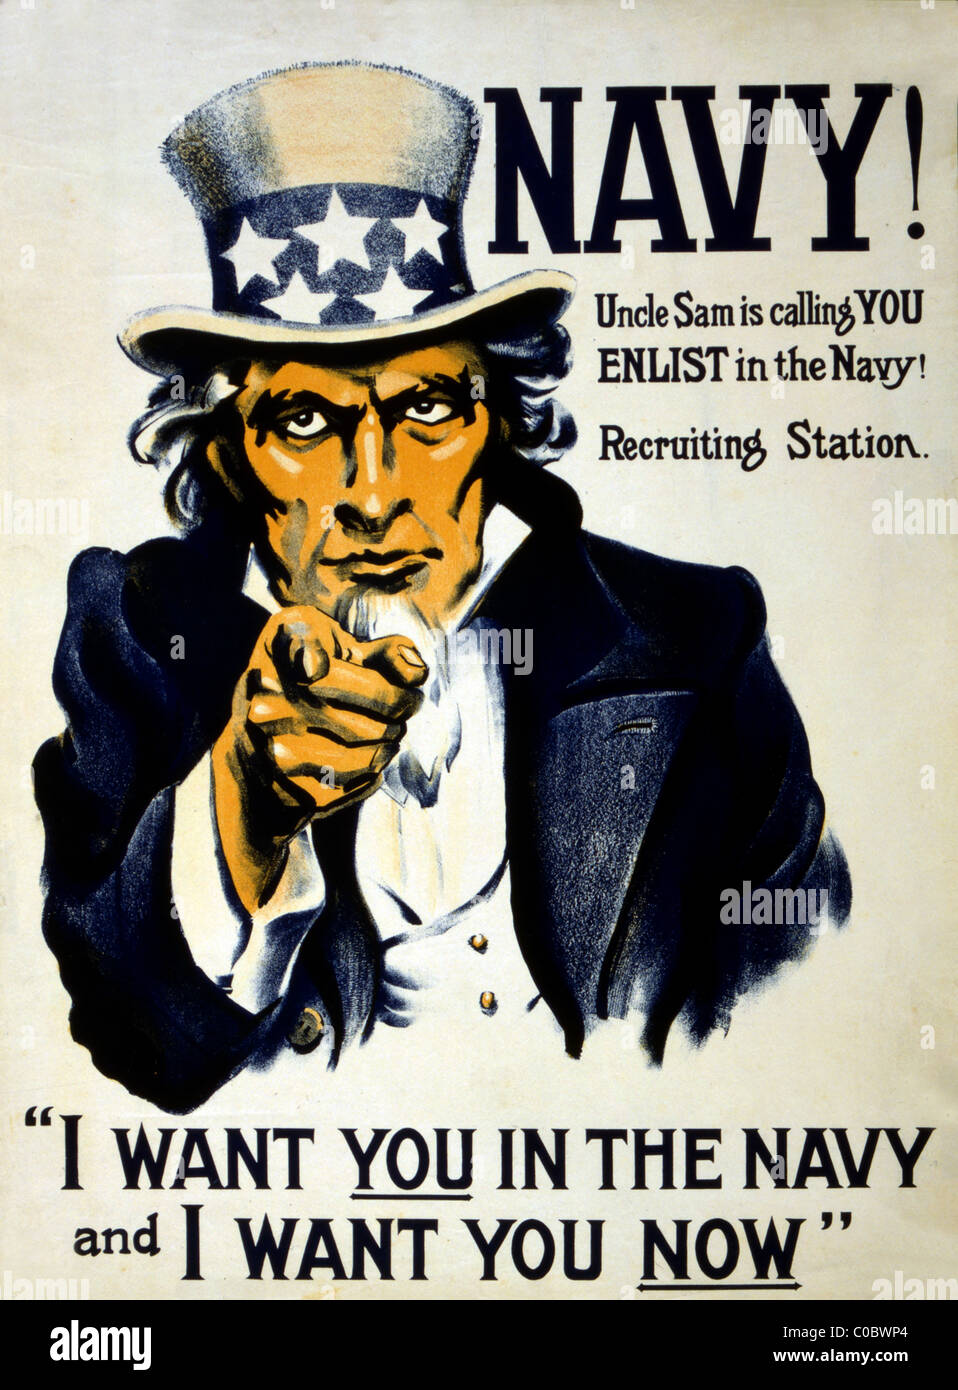 El Tío Sam póster de reclutamiento para la Marina estadounidense. Marina! El Tío Sam le está llamando- a alistarse en la Marina! Foto de stock